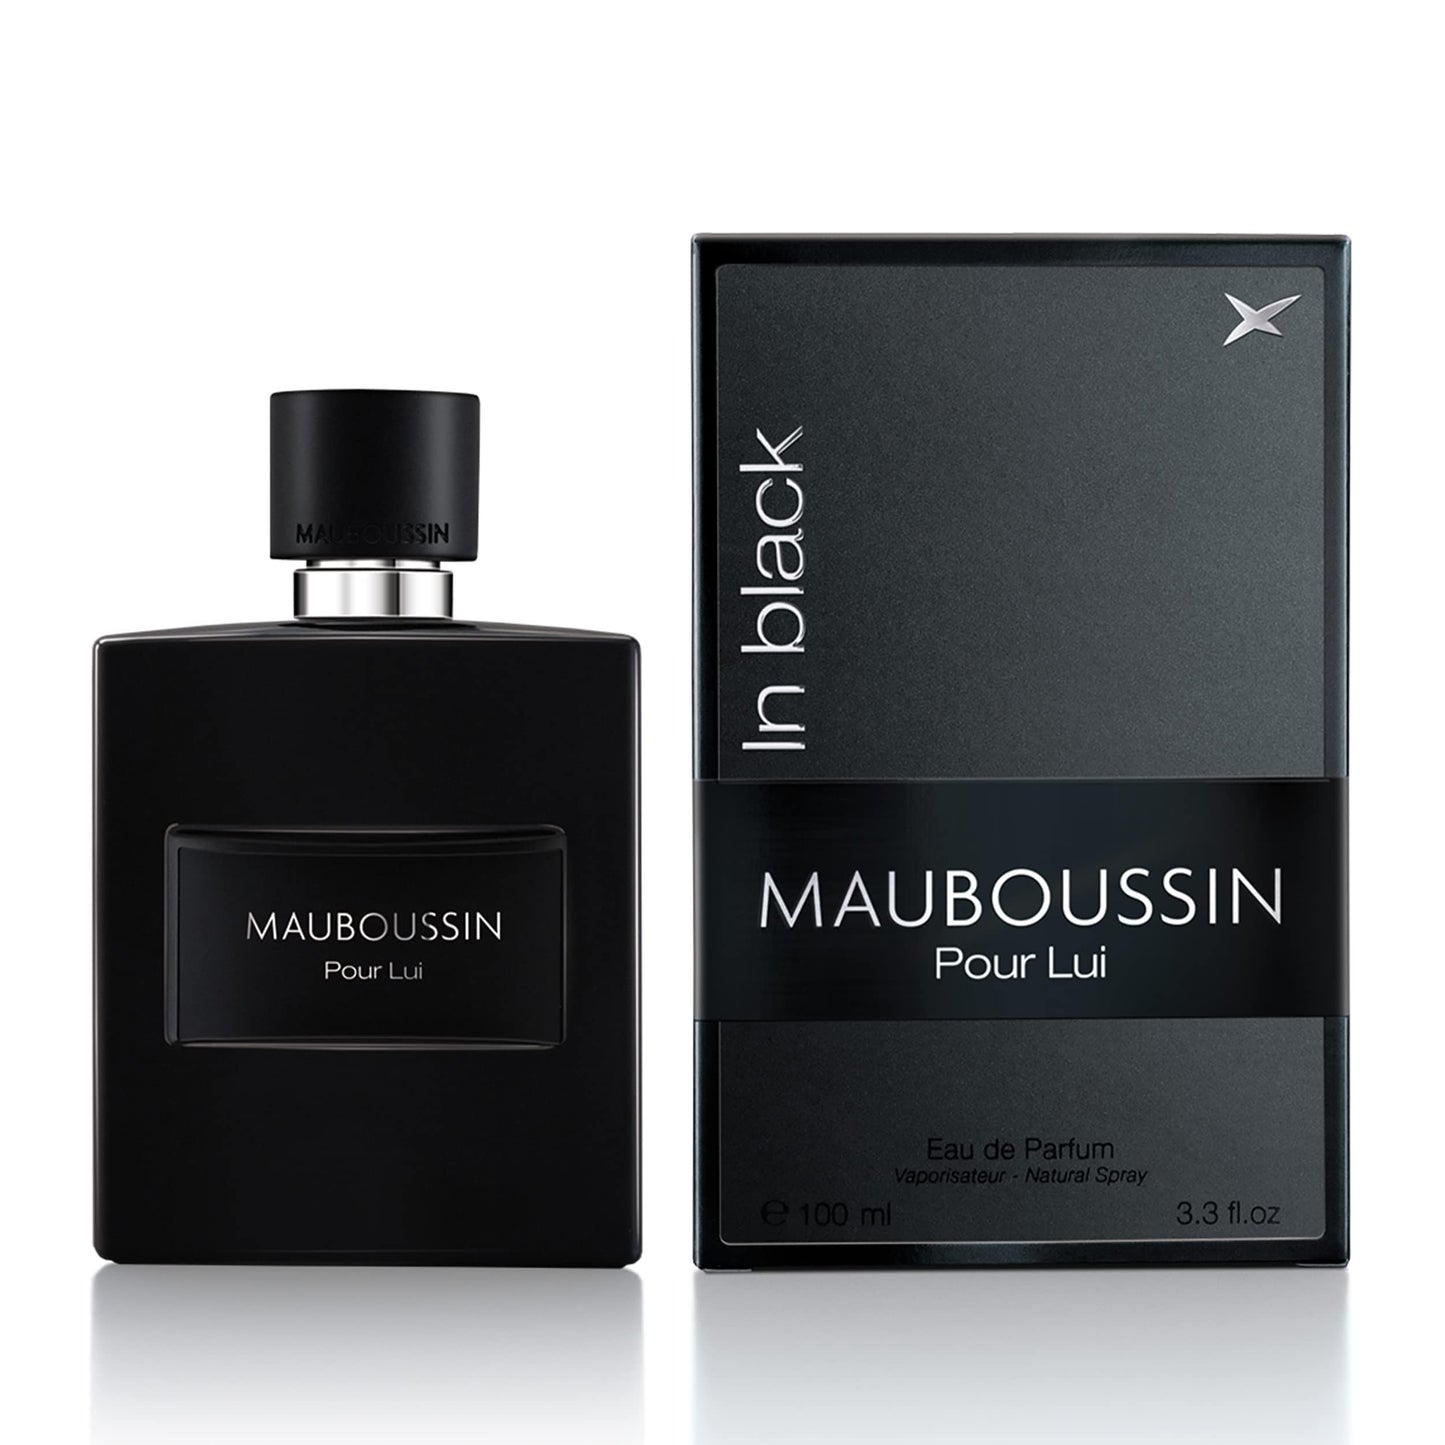 Mauboussin - For him in black eau de parfum - 100 ml - Mauboussin - Ethni Beauty Market